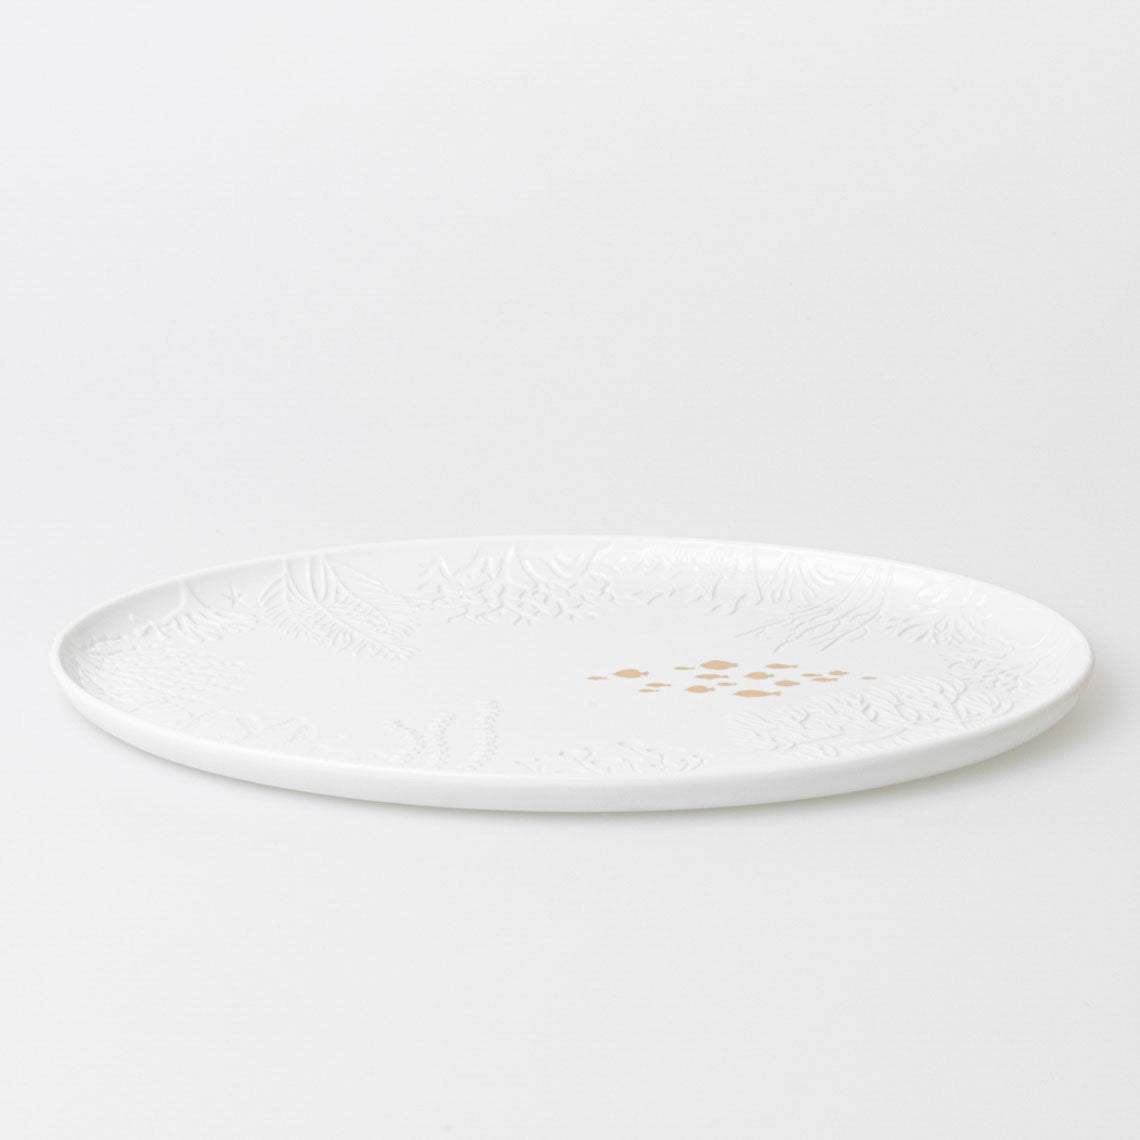 UNTERWASSERWELT Servierteller, Servierplatte FISCHE von Räder-Design aus weißem und matten Porzellan mit goldenem Decal